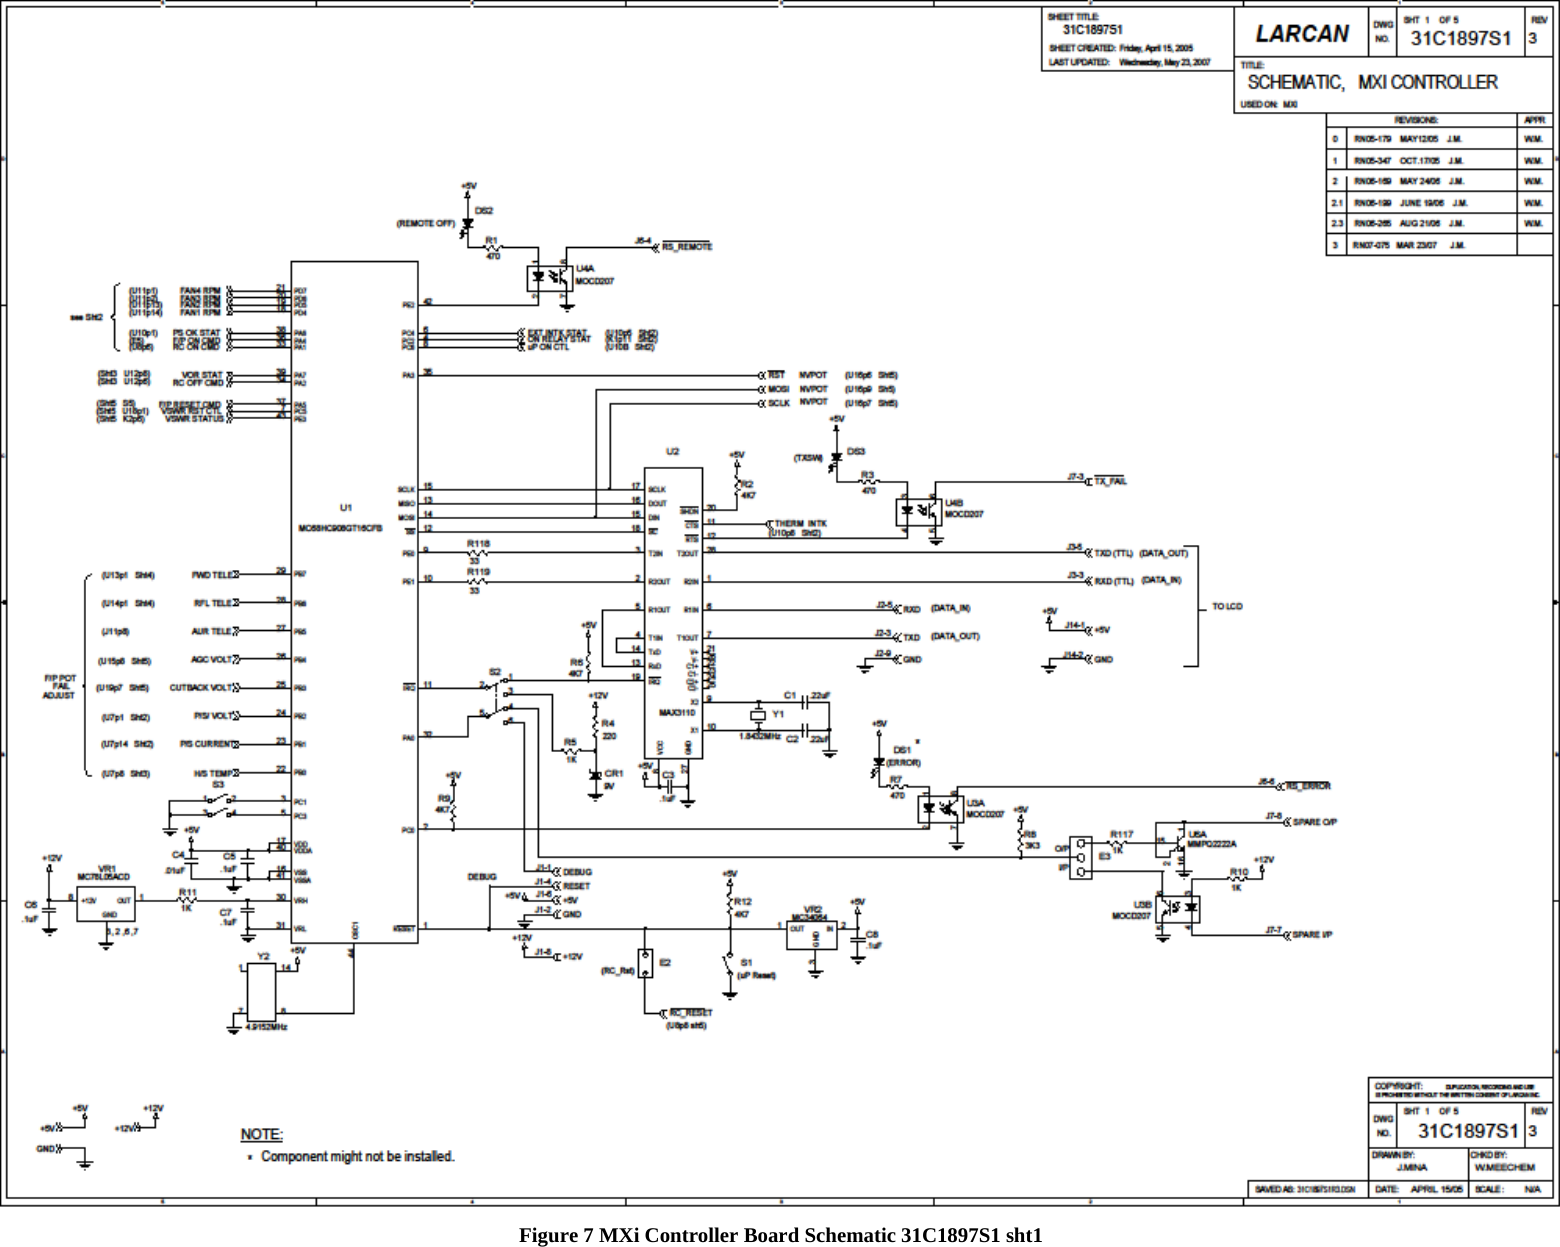    Figure 7 MXi Controller Board Schematic 31C1897S1 sht1   